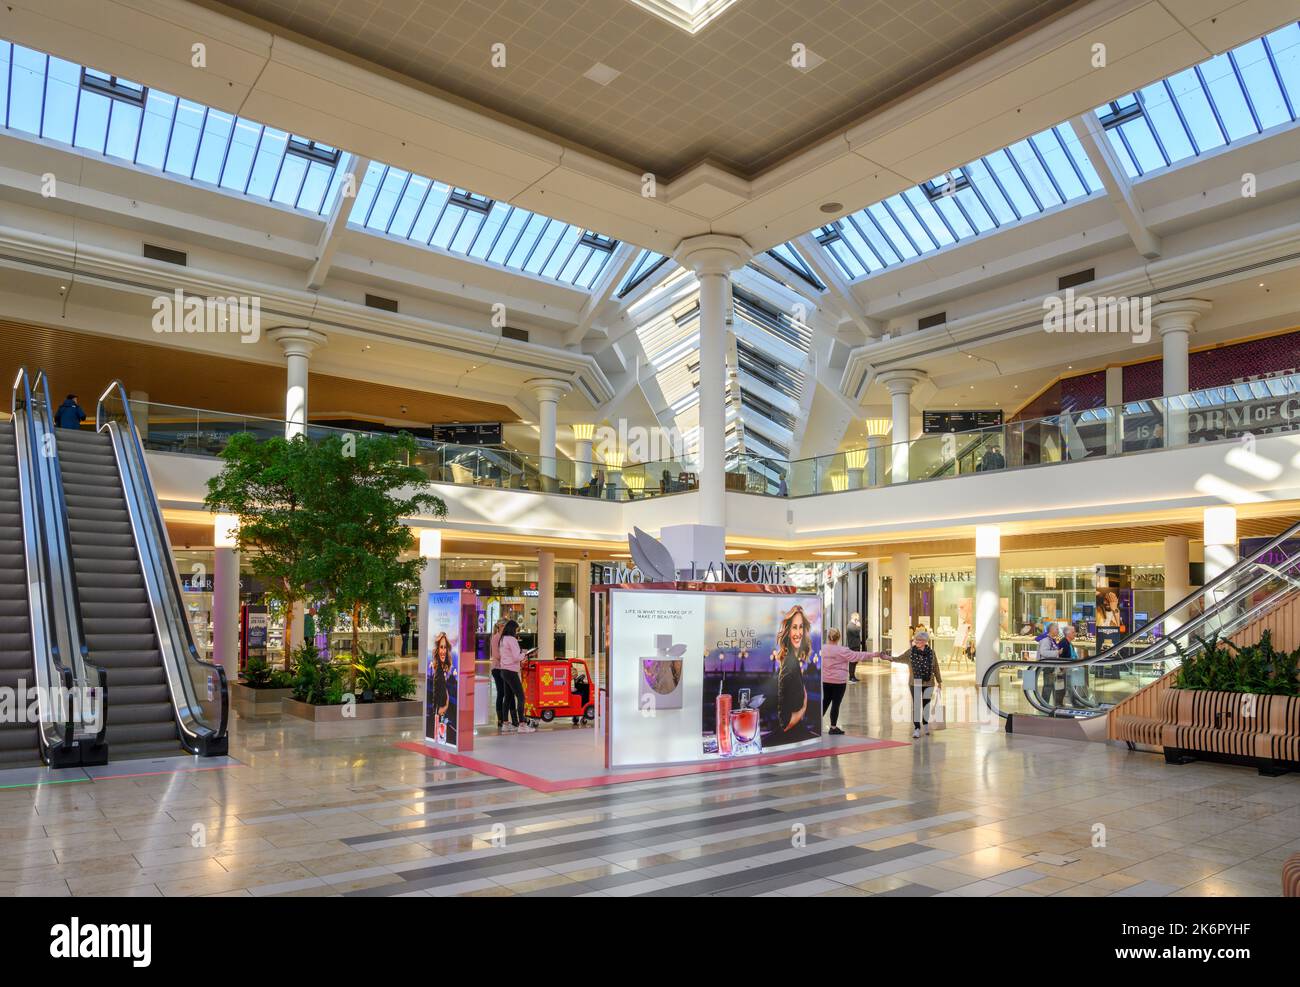 All'interno del centro commerciale MetroCentre, Gateshead, Newcastle, Tyne and Wear, Inghilterra, REGNO UNITO Foto Stock